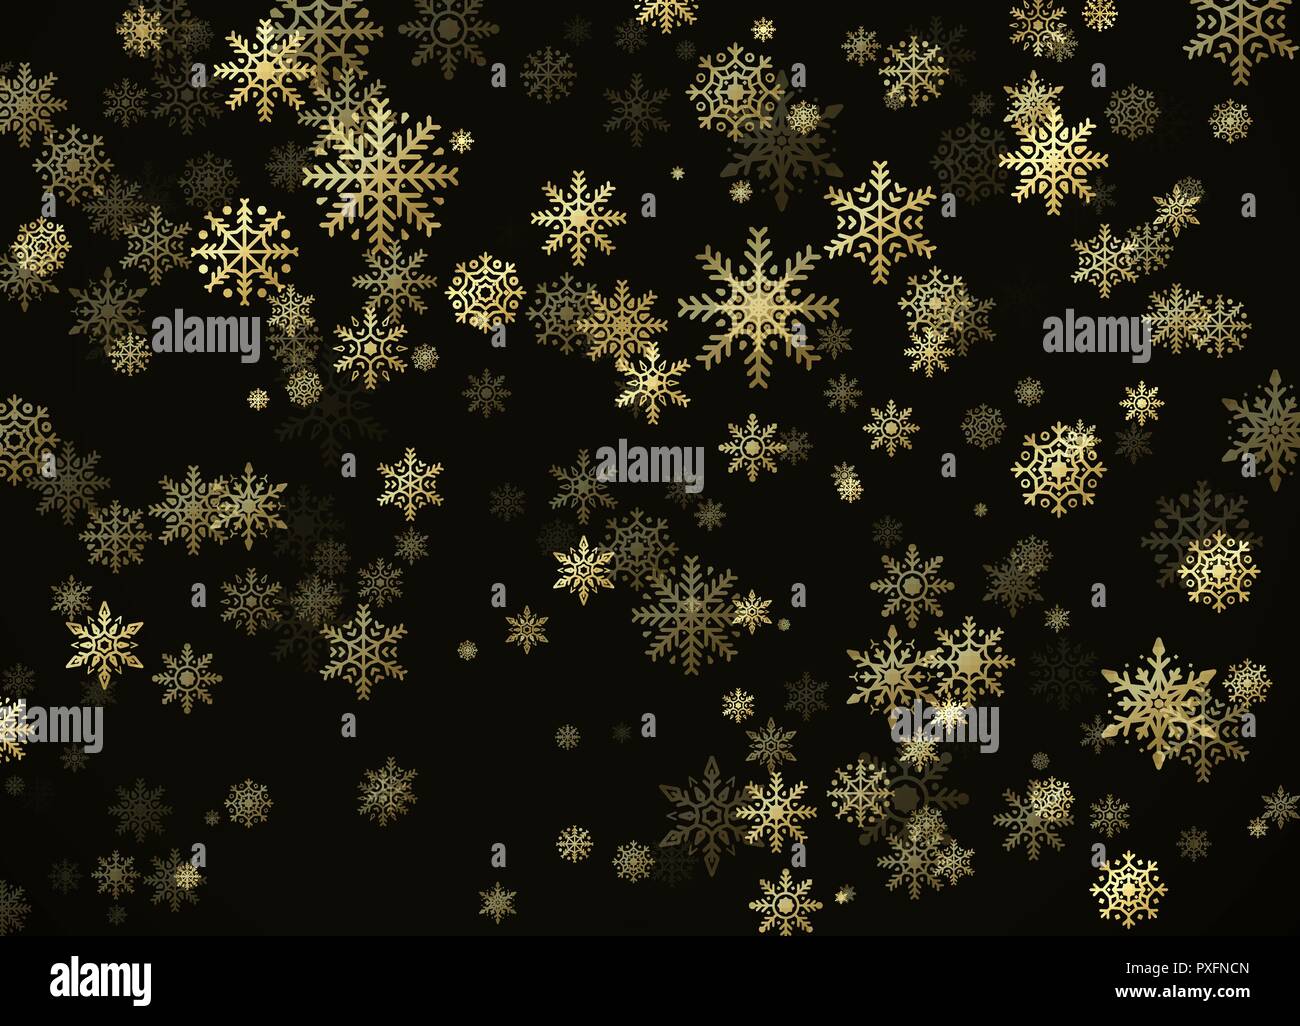 Golden Schneefall. Neues Jahr und Weihnachten Muster mit goldenen Schneeflocken auf schwarzem Hintergrund. Vector Illustration Stock Vektor